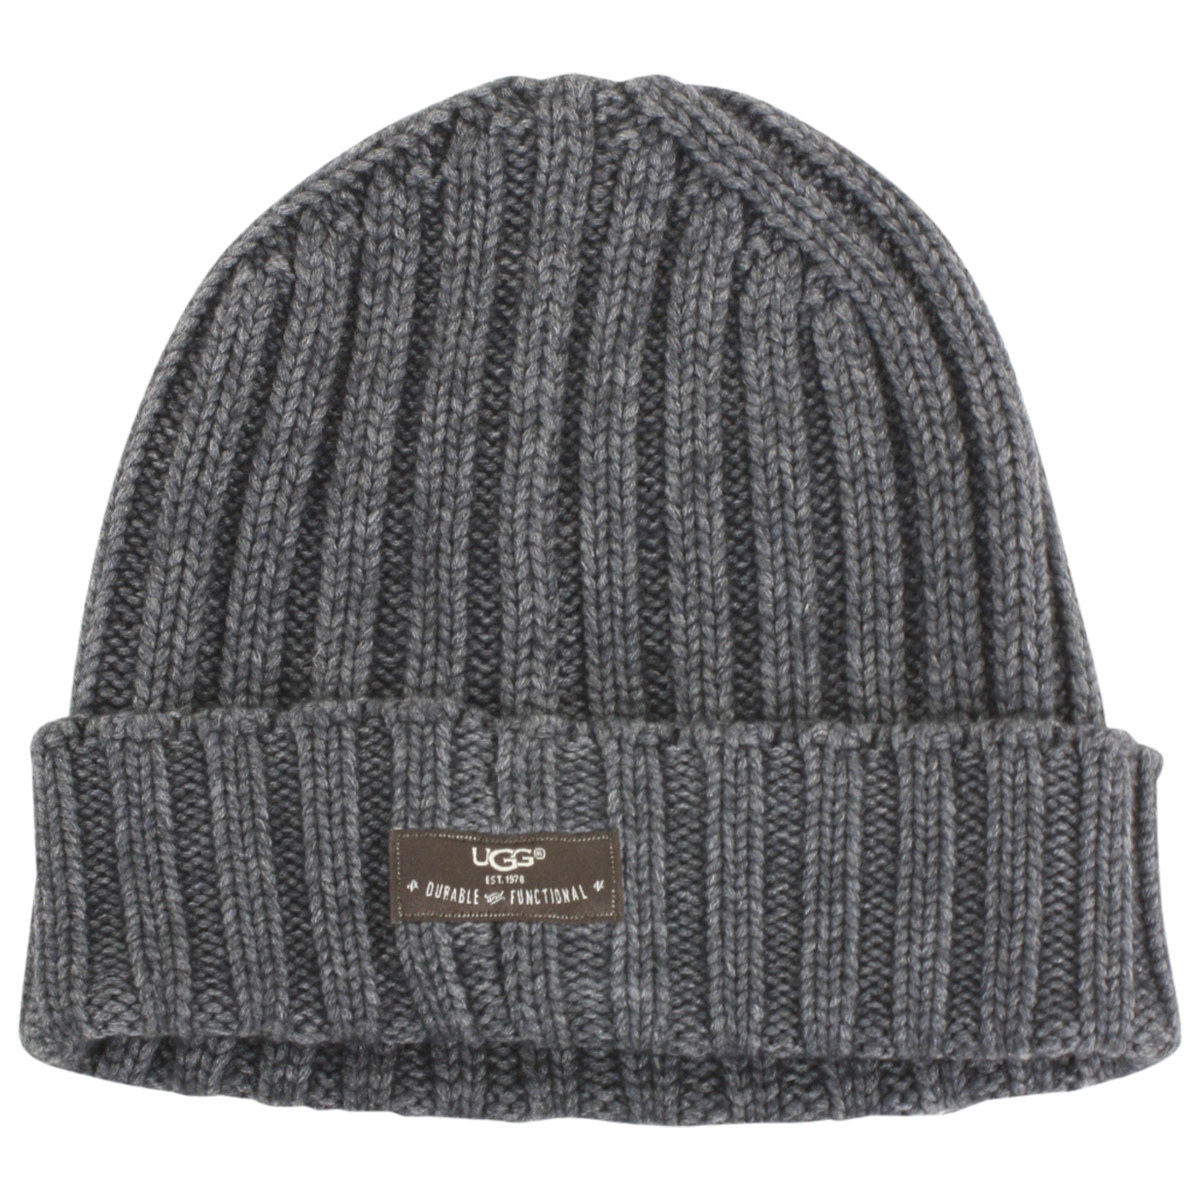 ugg winter hat